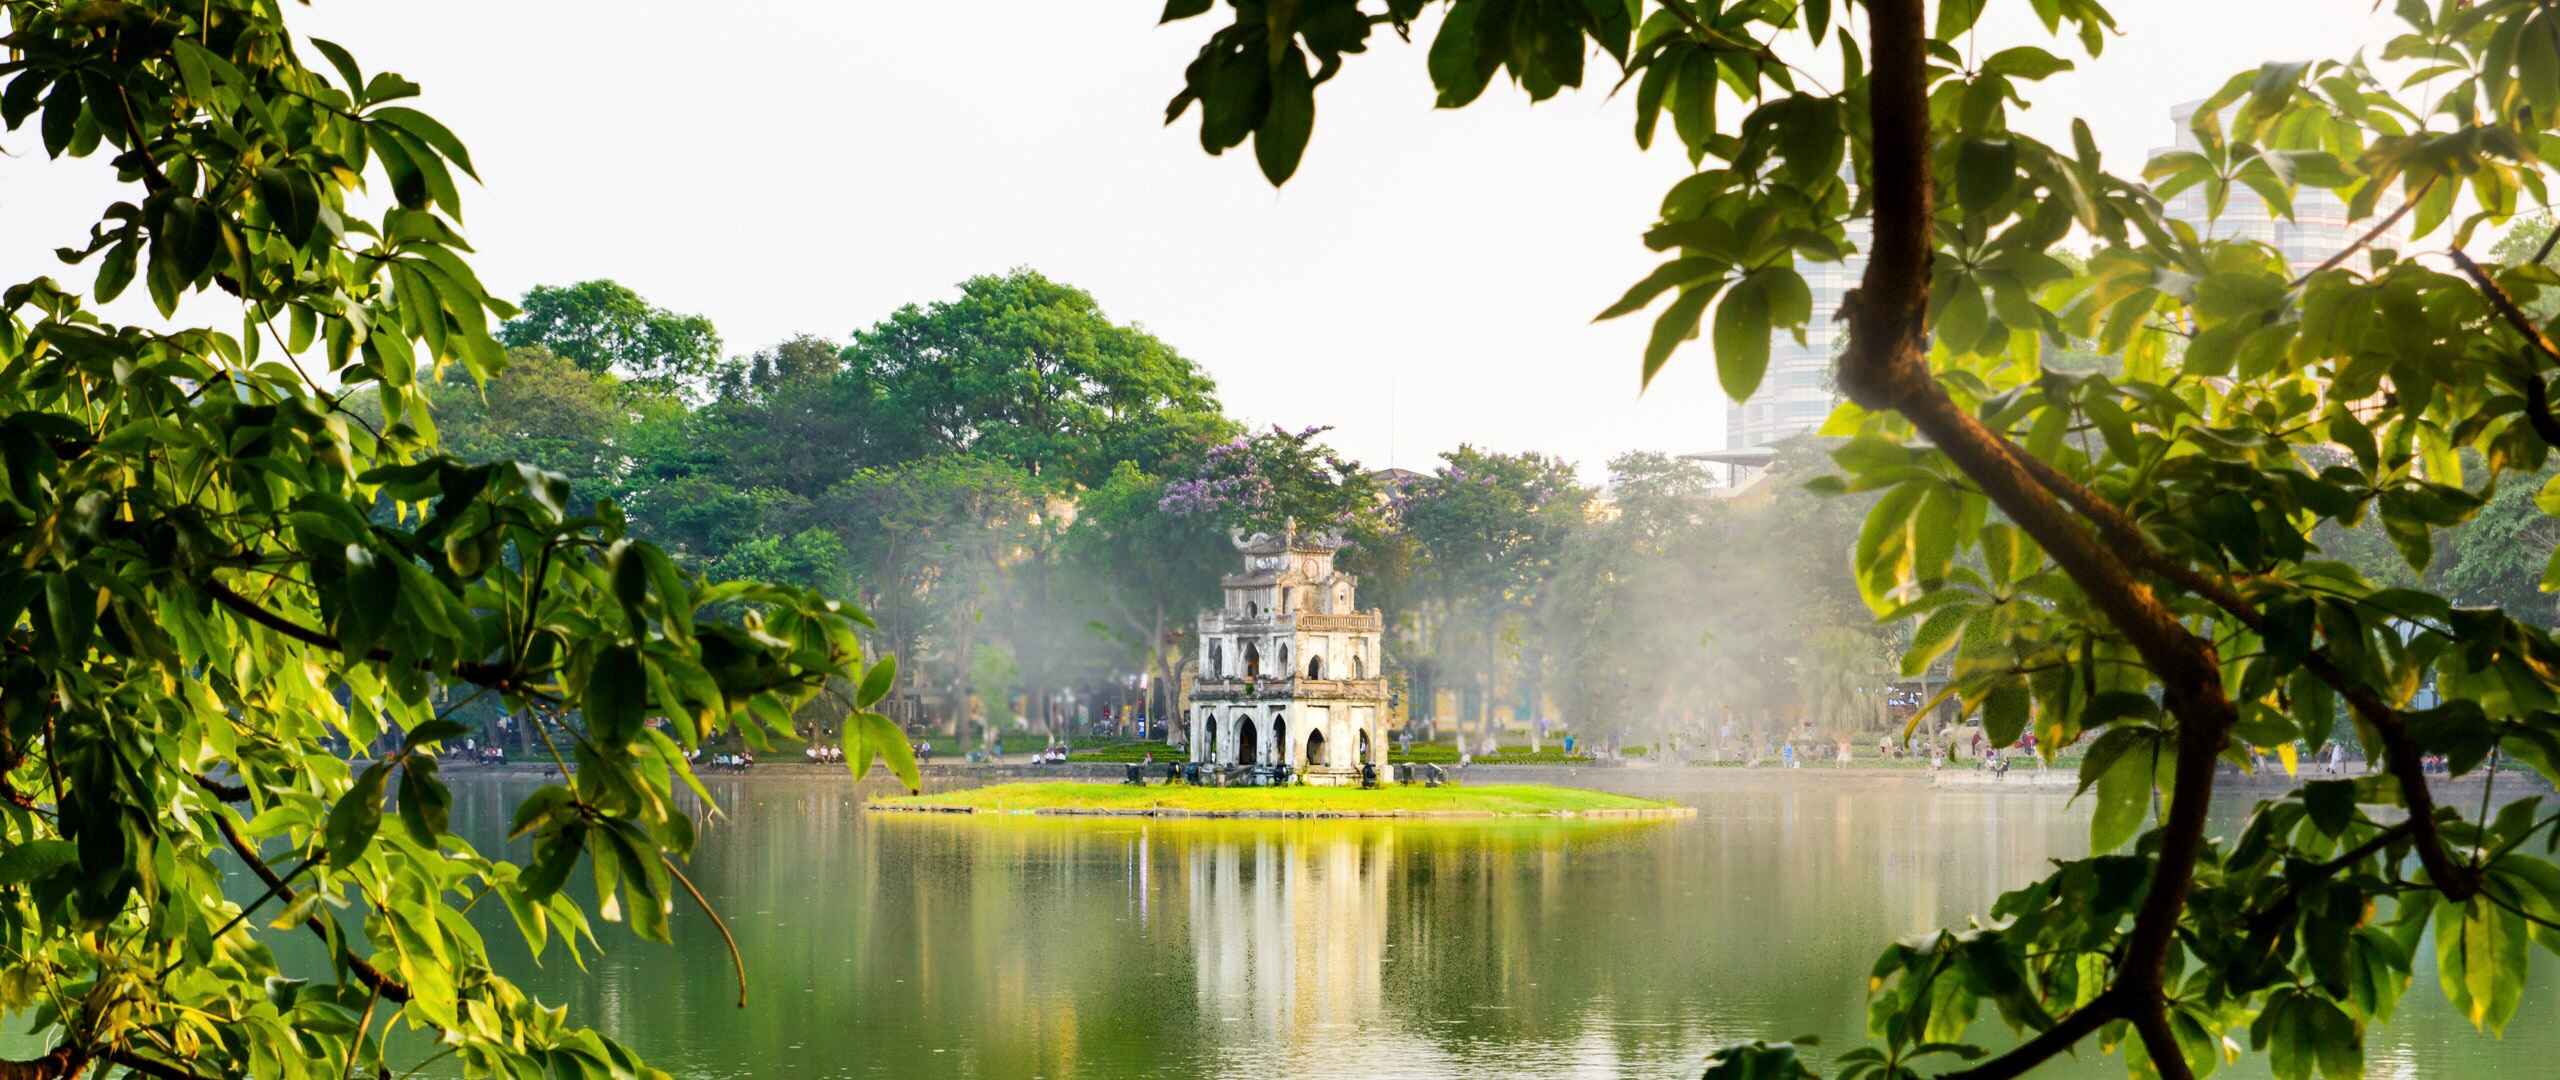 Located approximately 25 kilometres from Hanoi's city centre